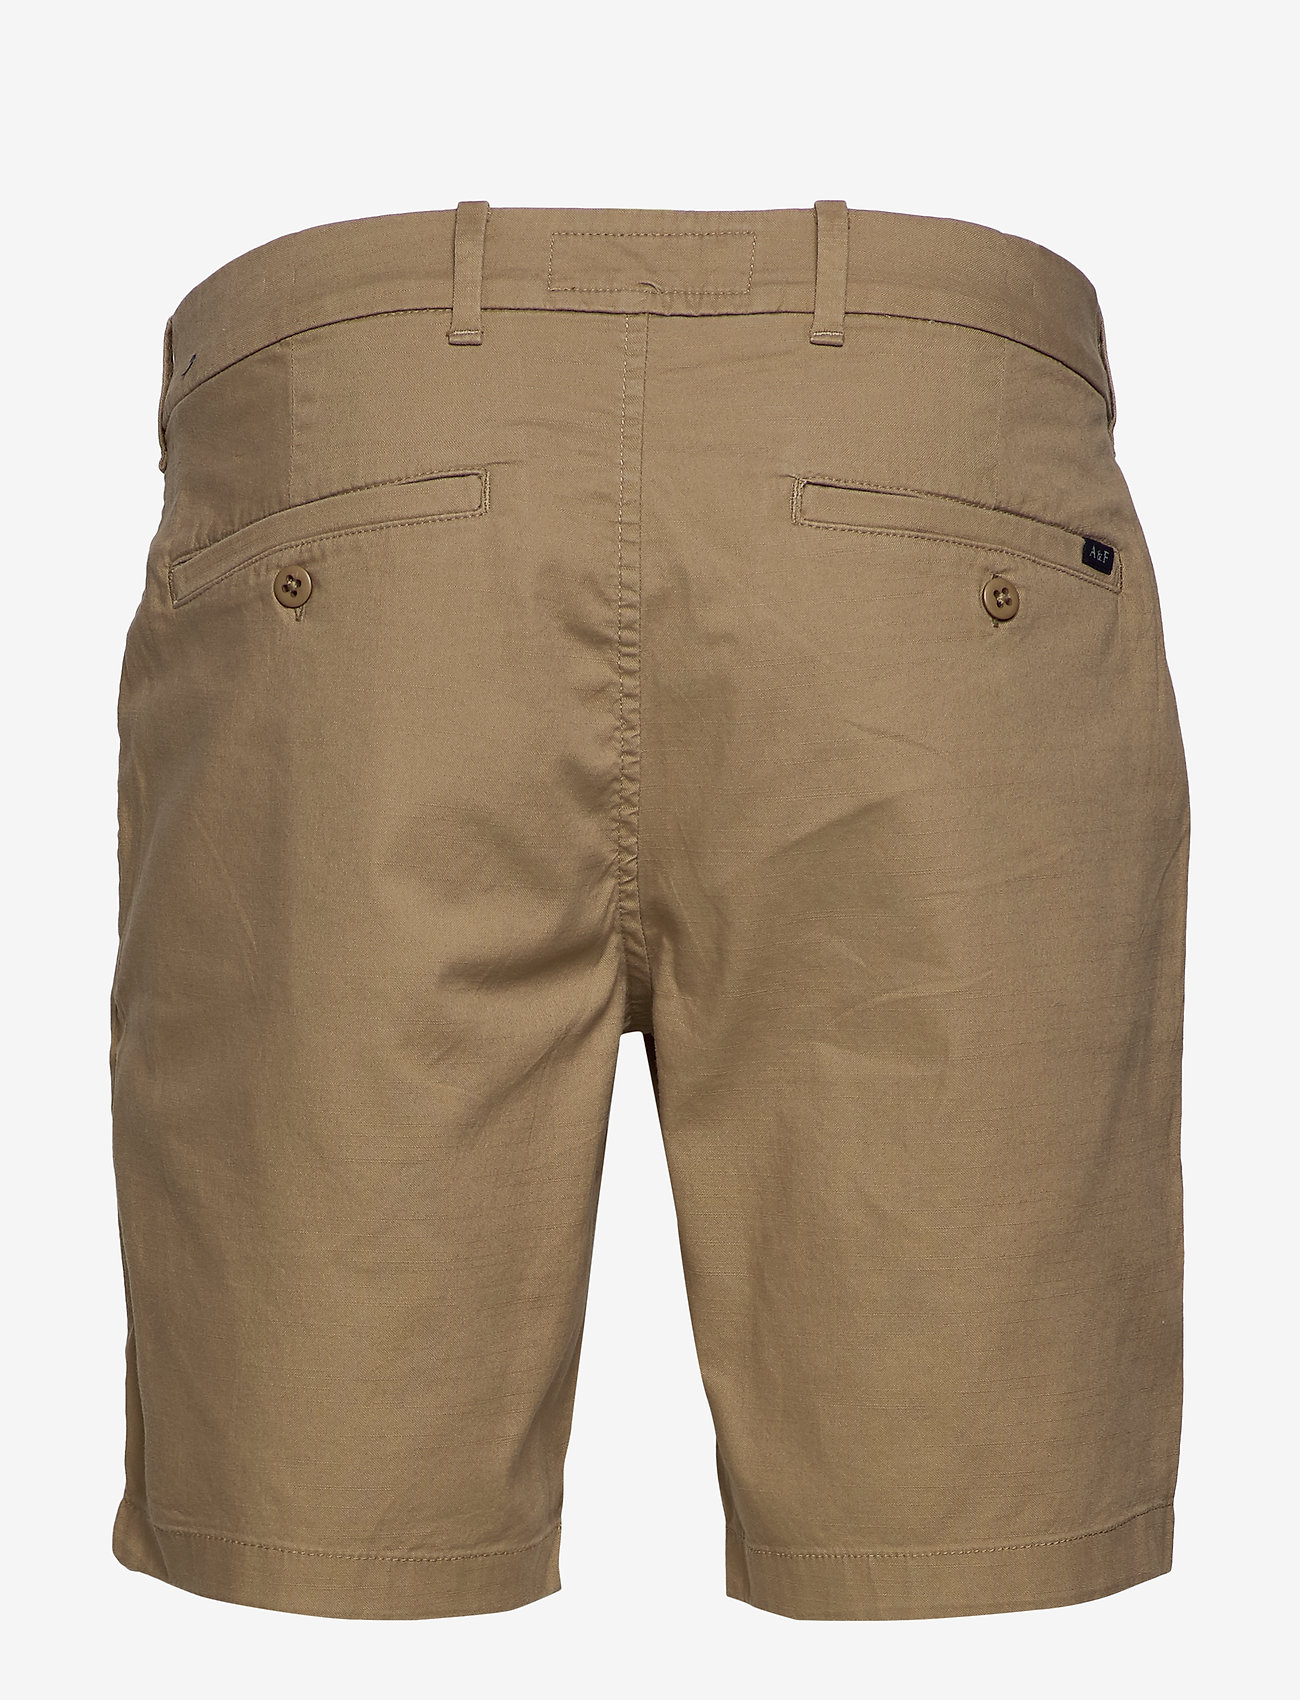 Shorts (Light Khaki) (44.20 